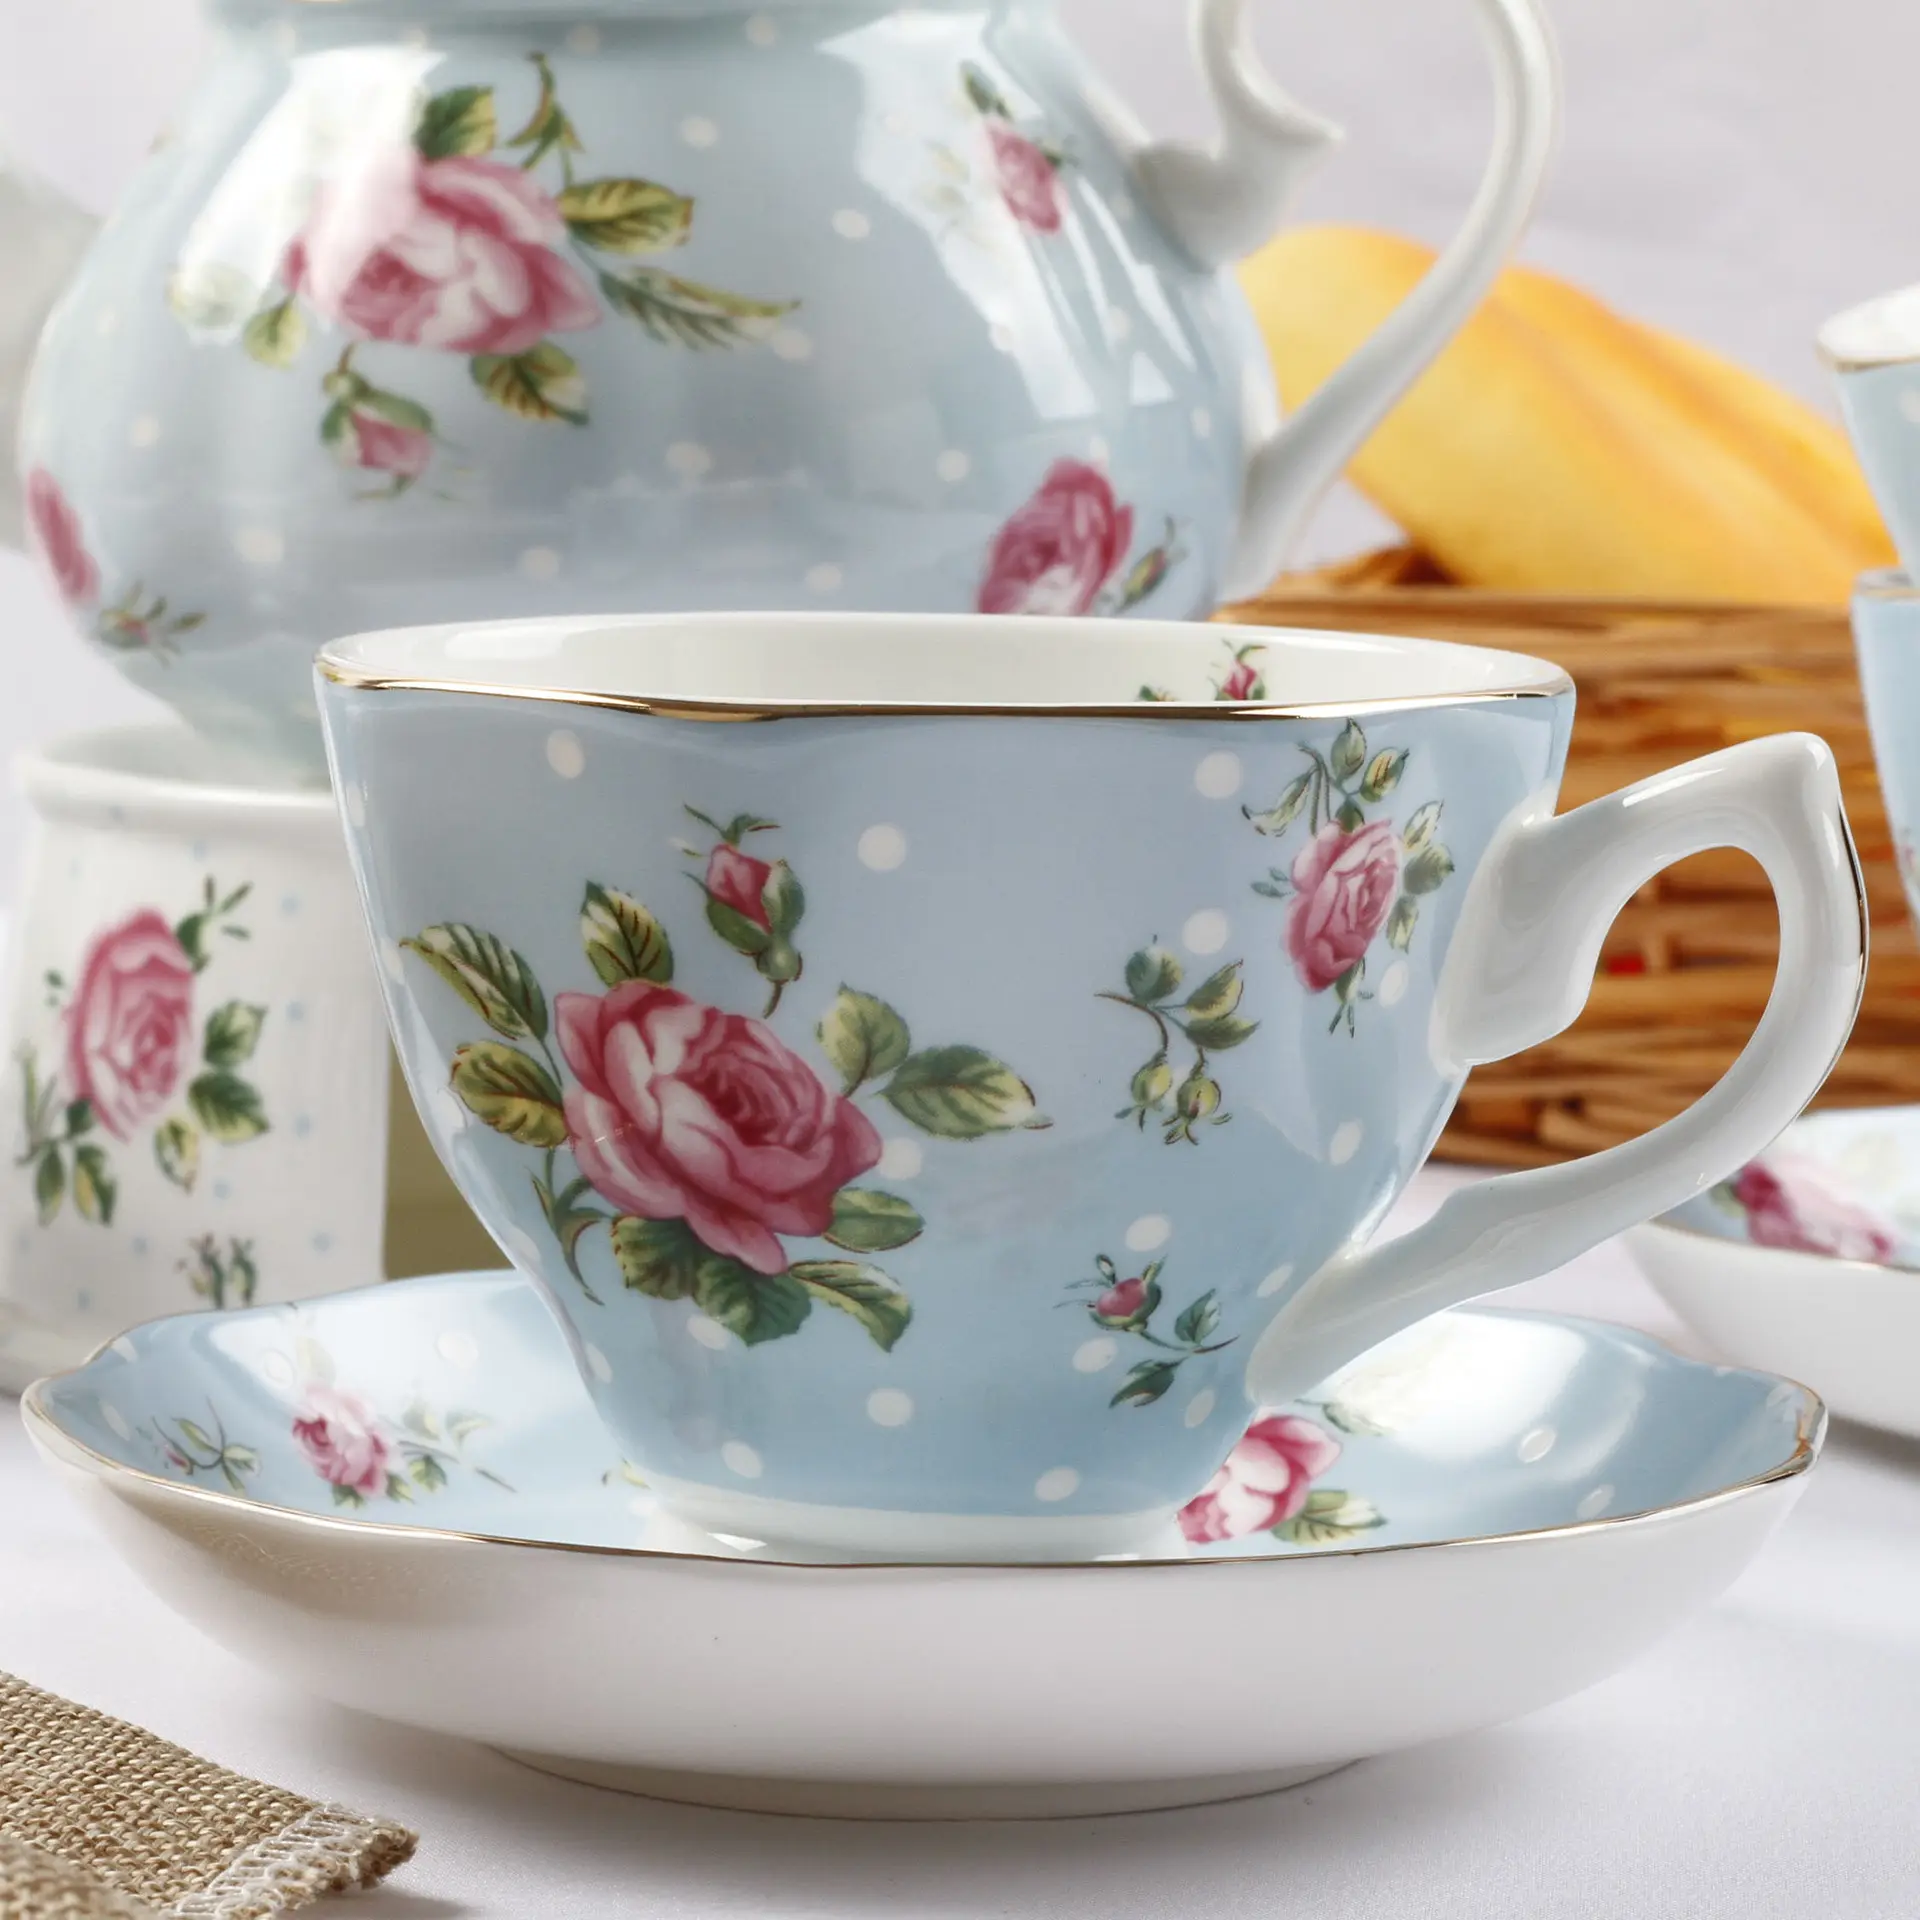 Maison moderne en céramique tasse à thé anglais après-midi Vintage tasse Floral os chine tasses à café soucoupe ensemble or garniture fleur tasse à thé